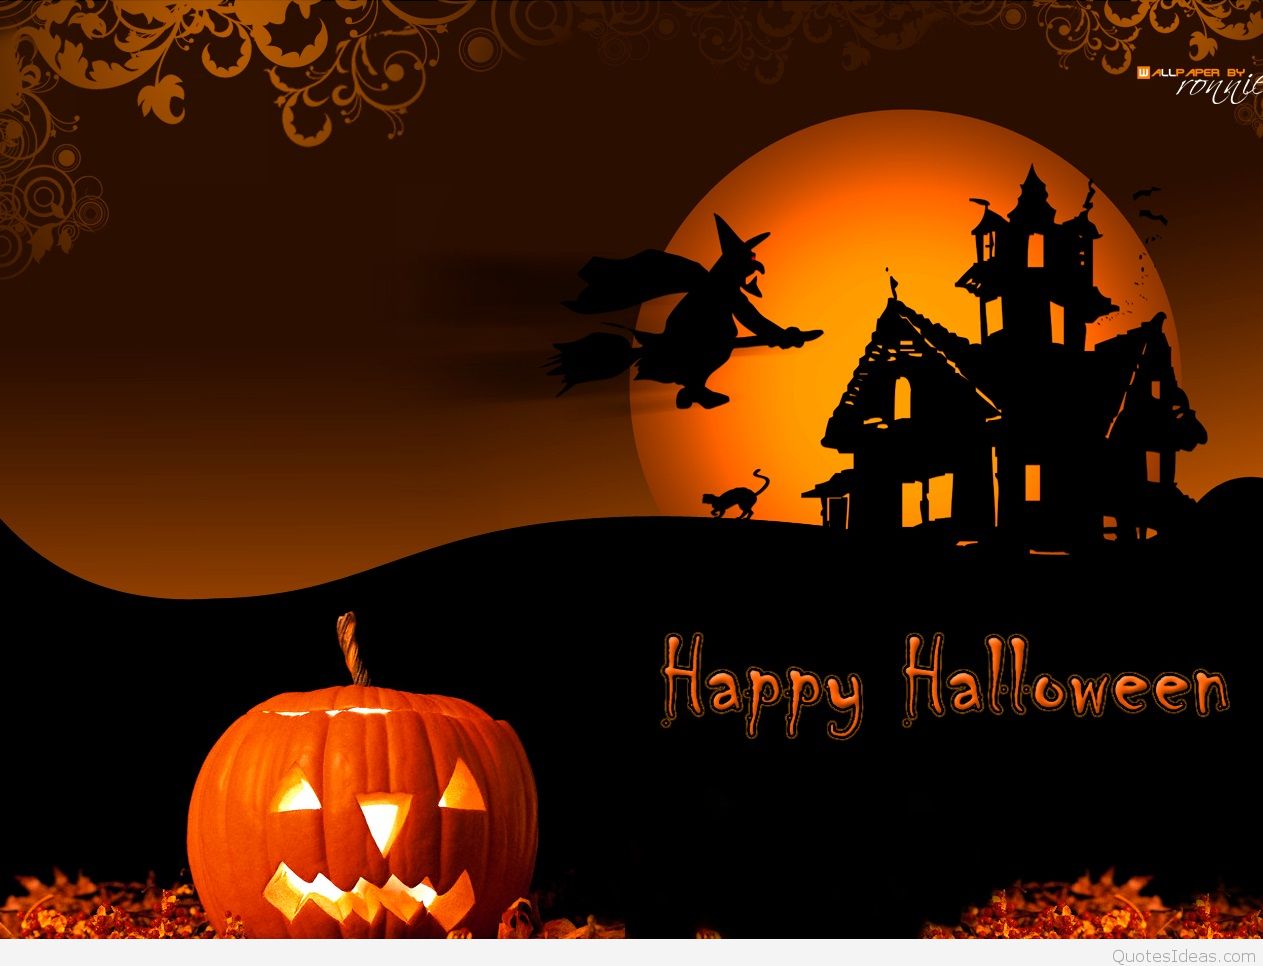 Happy Halloween - Happy Halloween Hd - 1263x966 Wallpaper - teahub.io